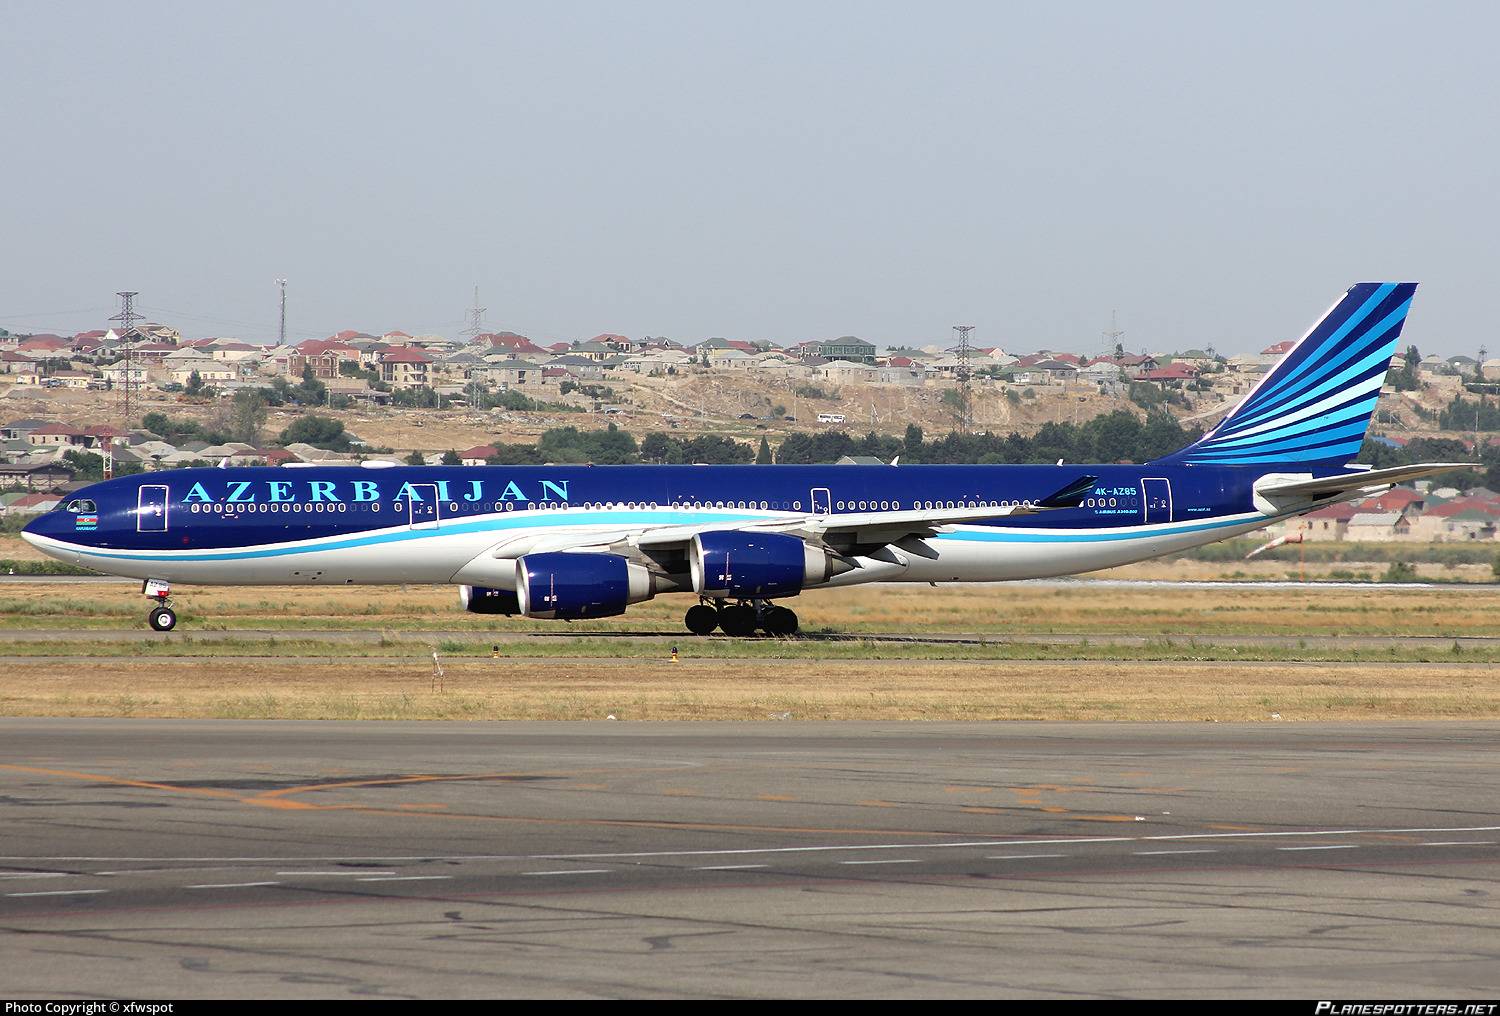 Азербайджанские авиалинии: официальный сайт, отзывы